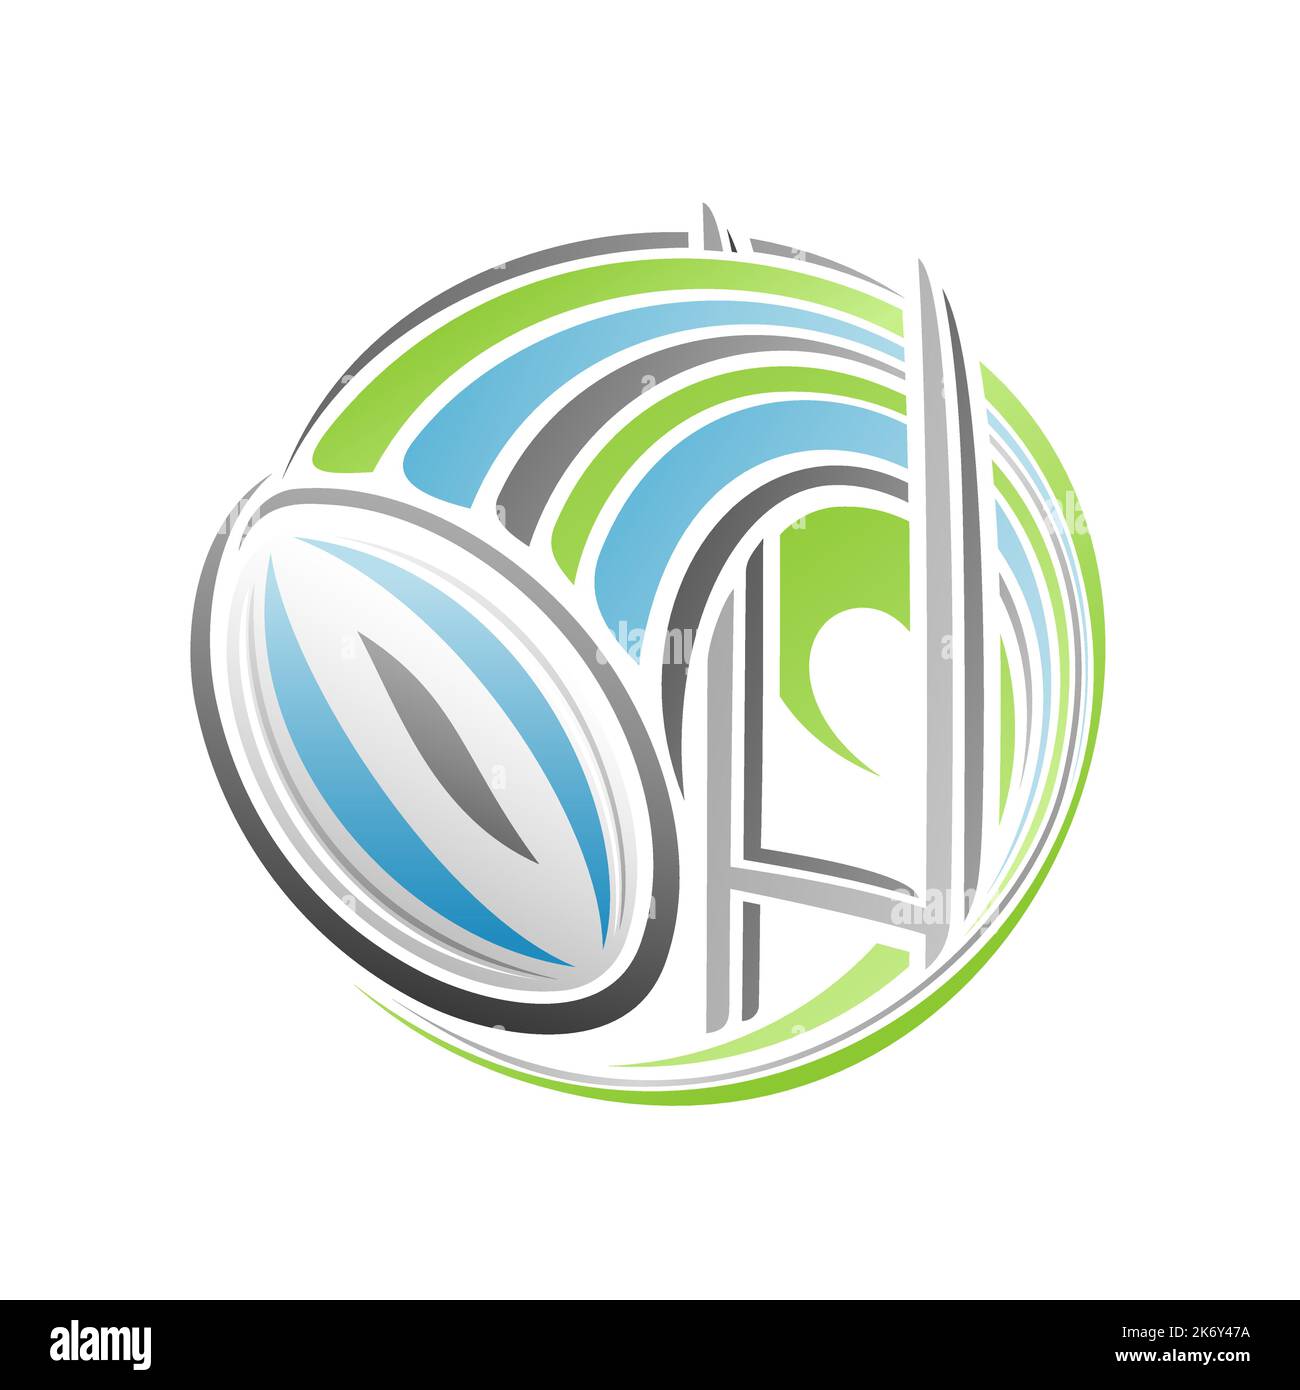 Vektor-Logo für Rugby-Sport, isoliert modernes Emblem mit Umriss Illustration der fliegenden Rugby-Ball über Spielplatz in Tor, dekorative Linie Kunst Sport Stock Vektor